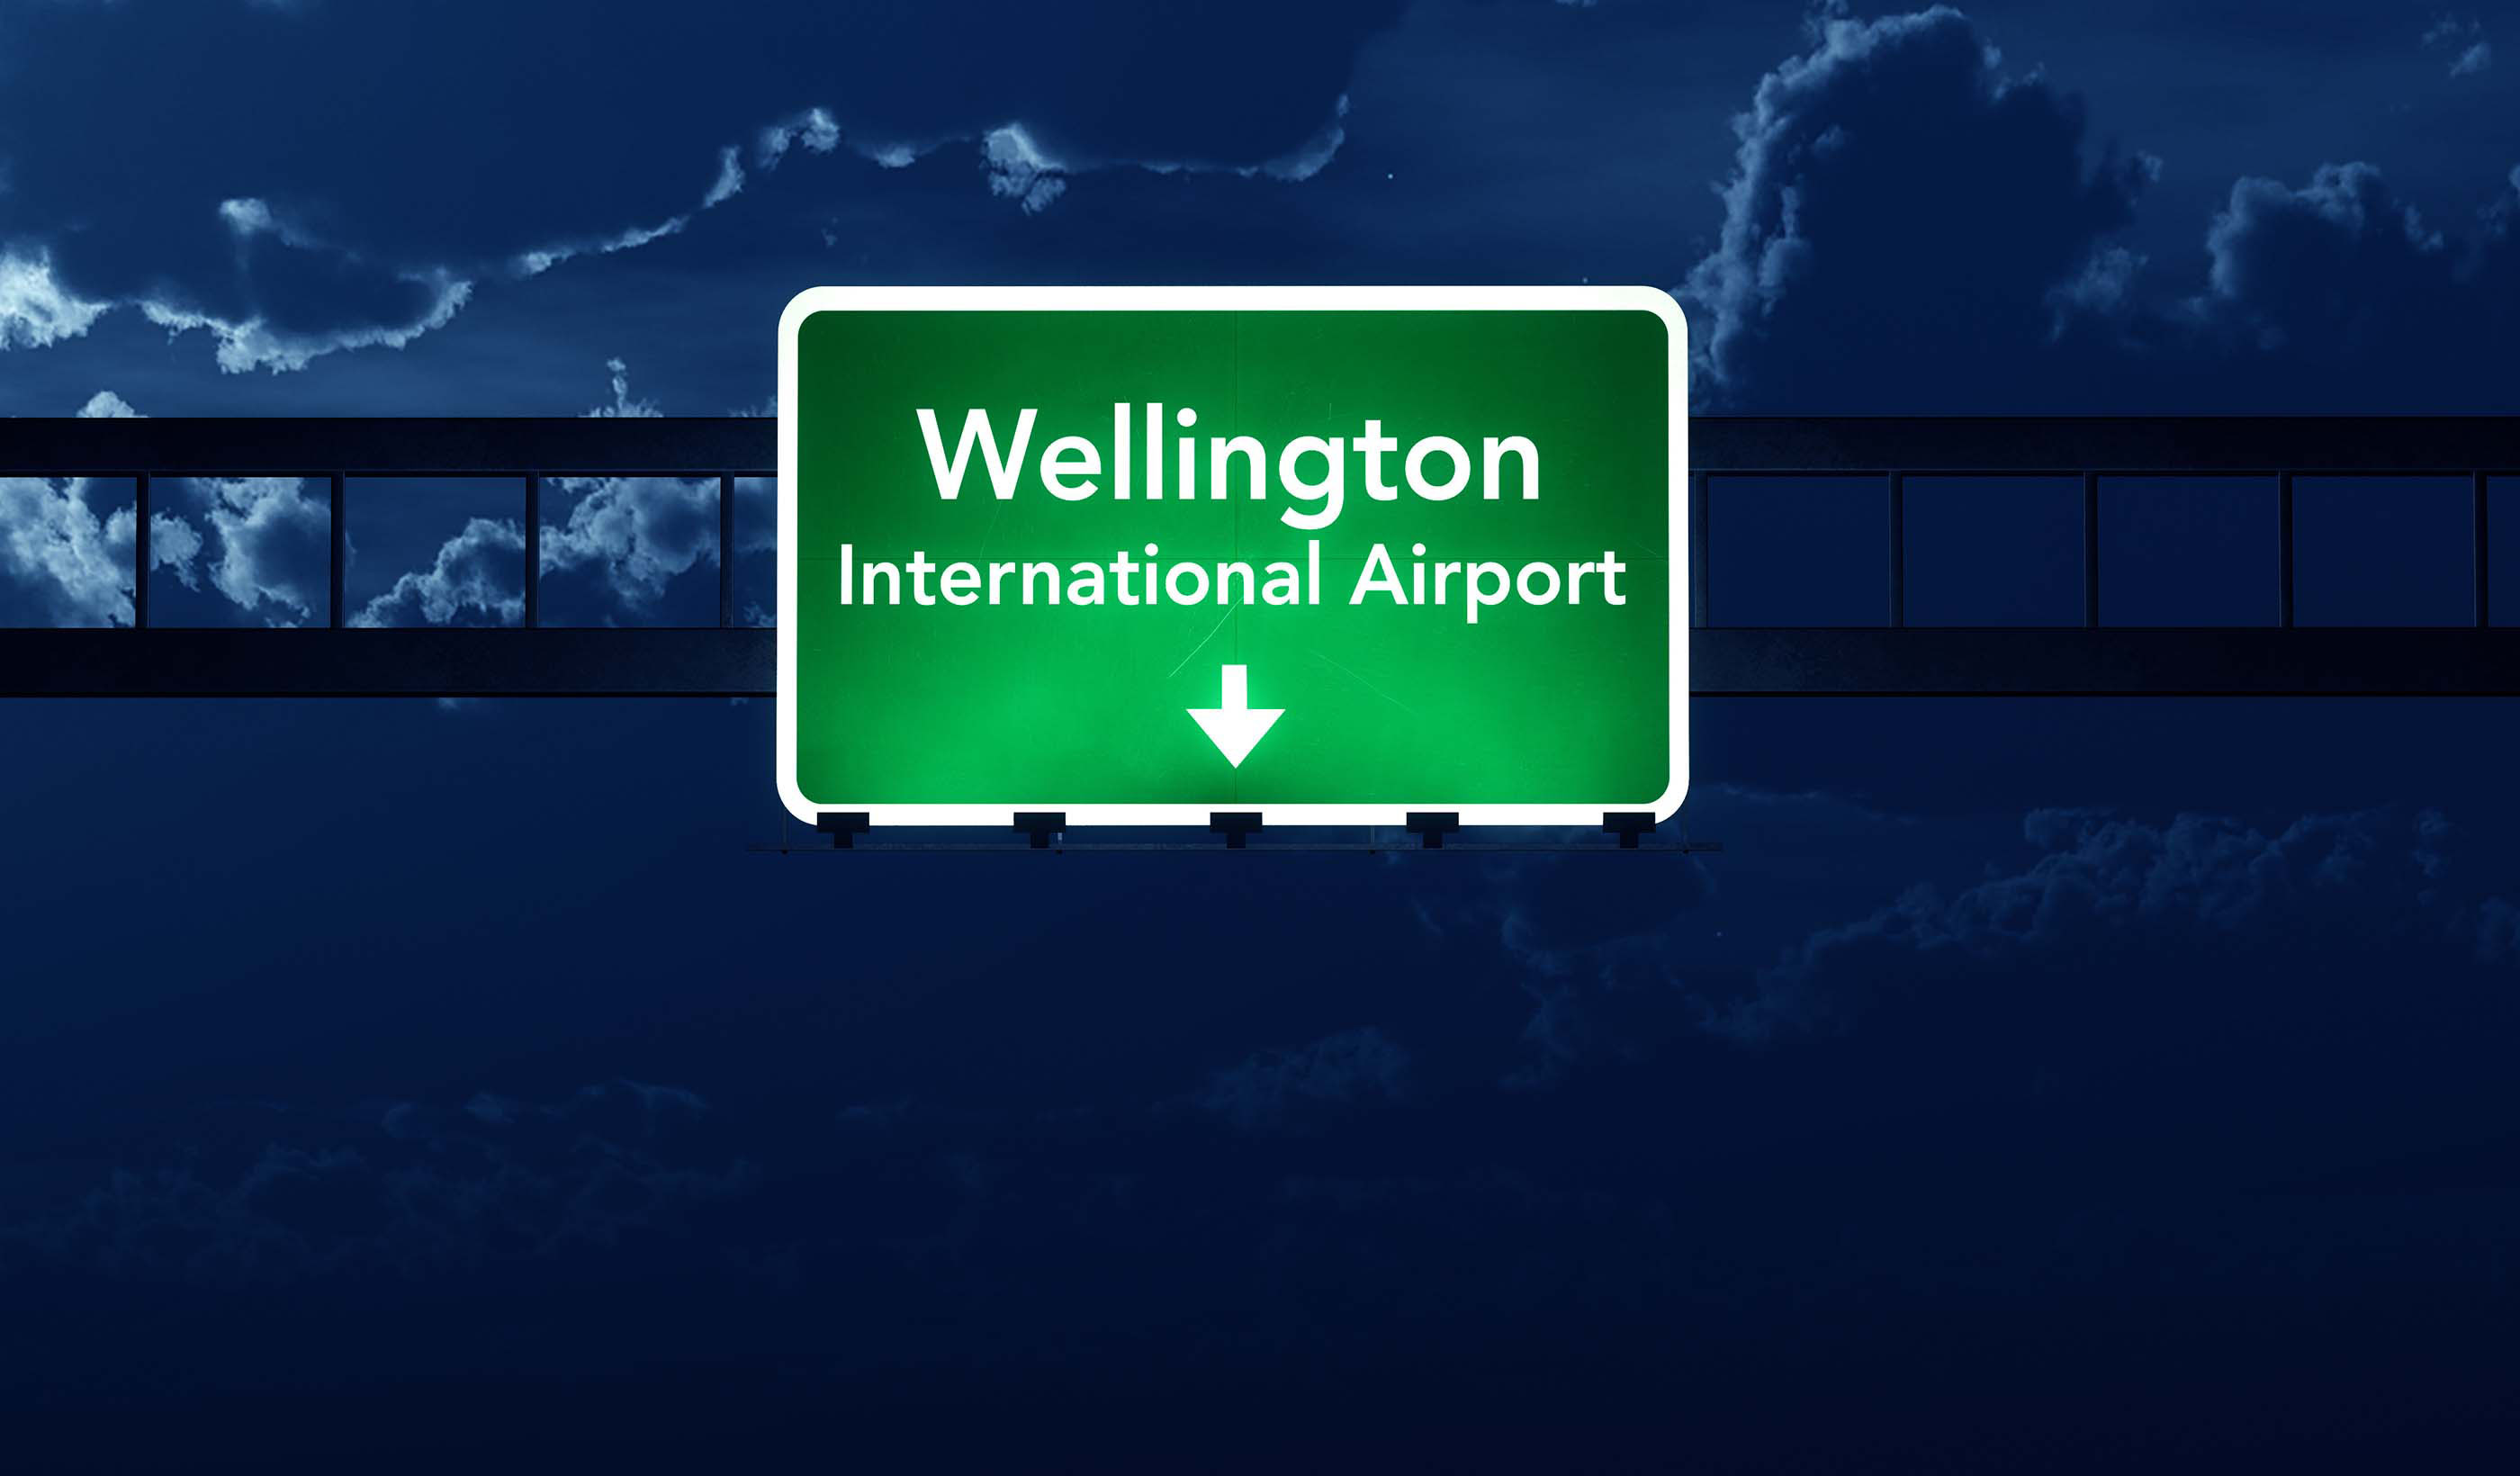 Wellington International Airport Parking Guidance